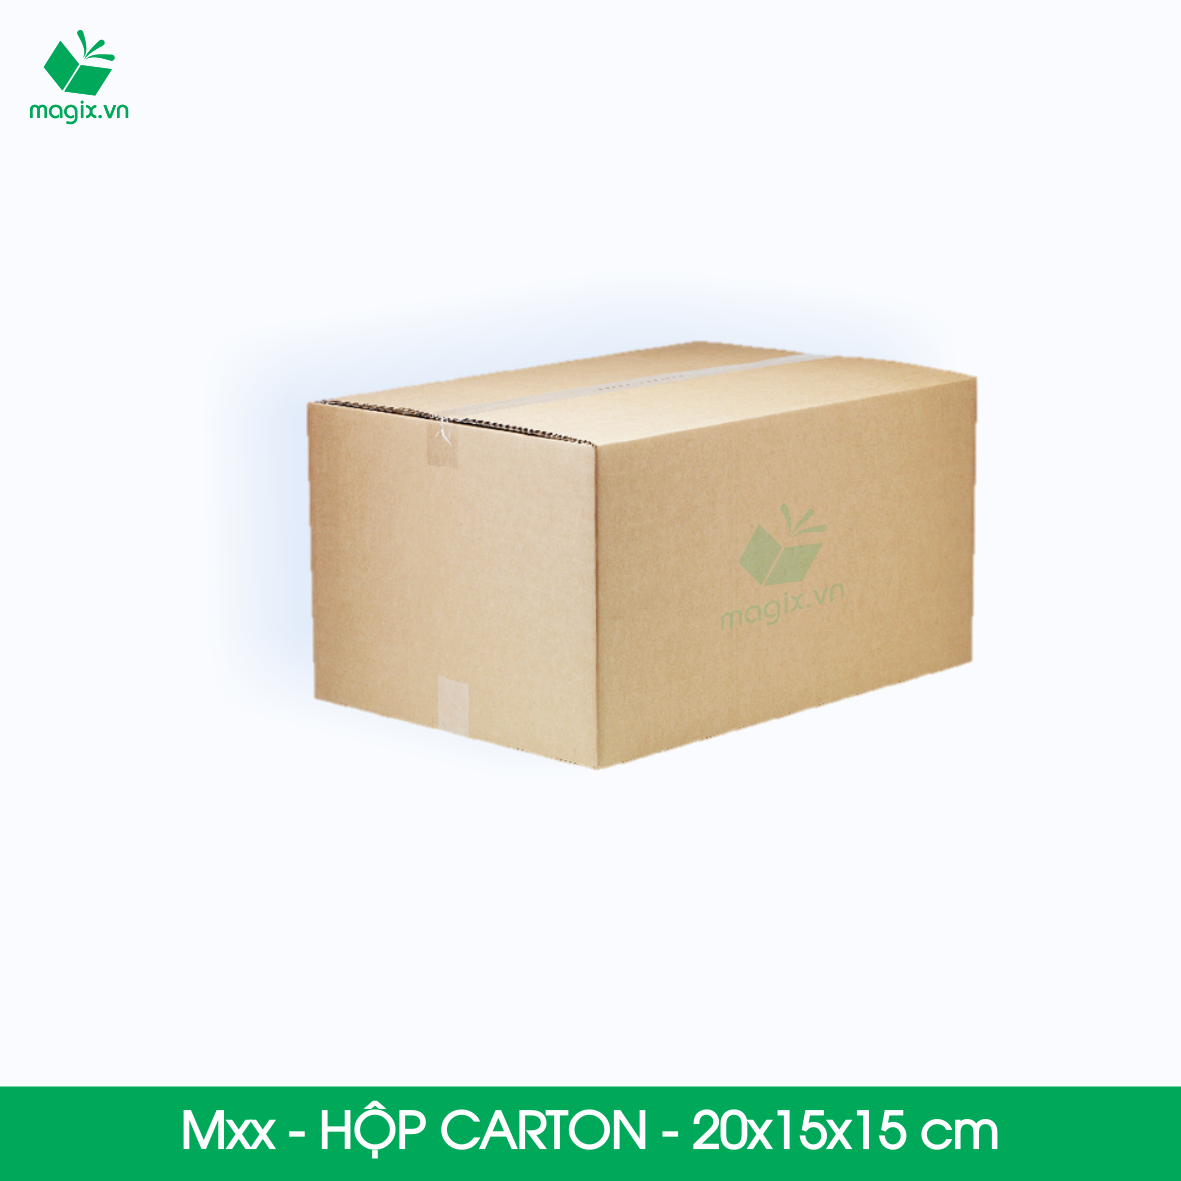 Hộp 20x15x15 cm - Combo 20 thùng hộp carton đóng hàng - tùy chọn chất lượng